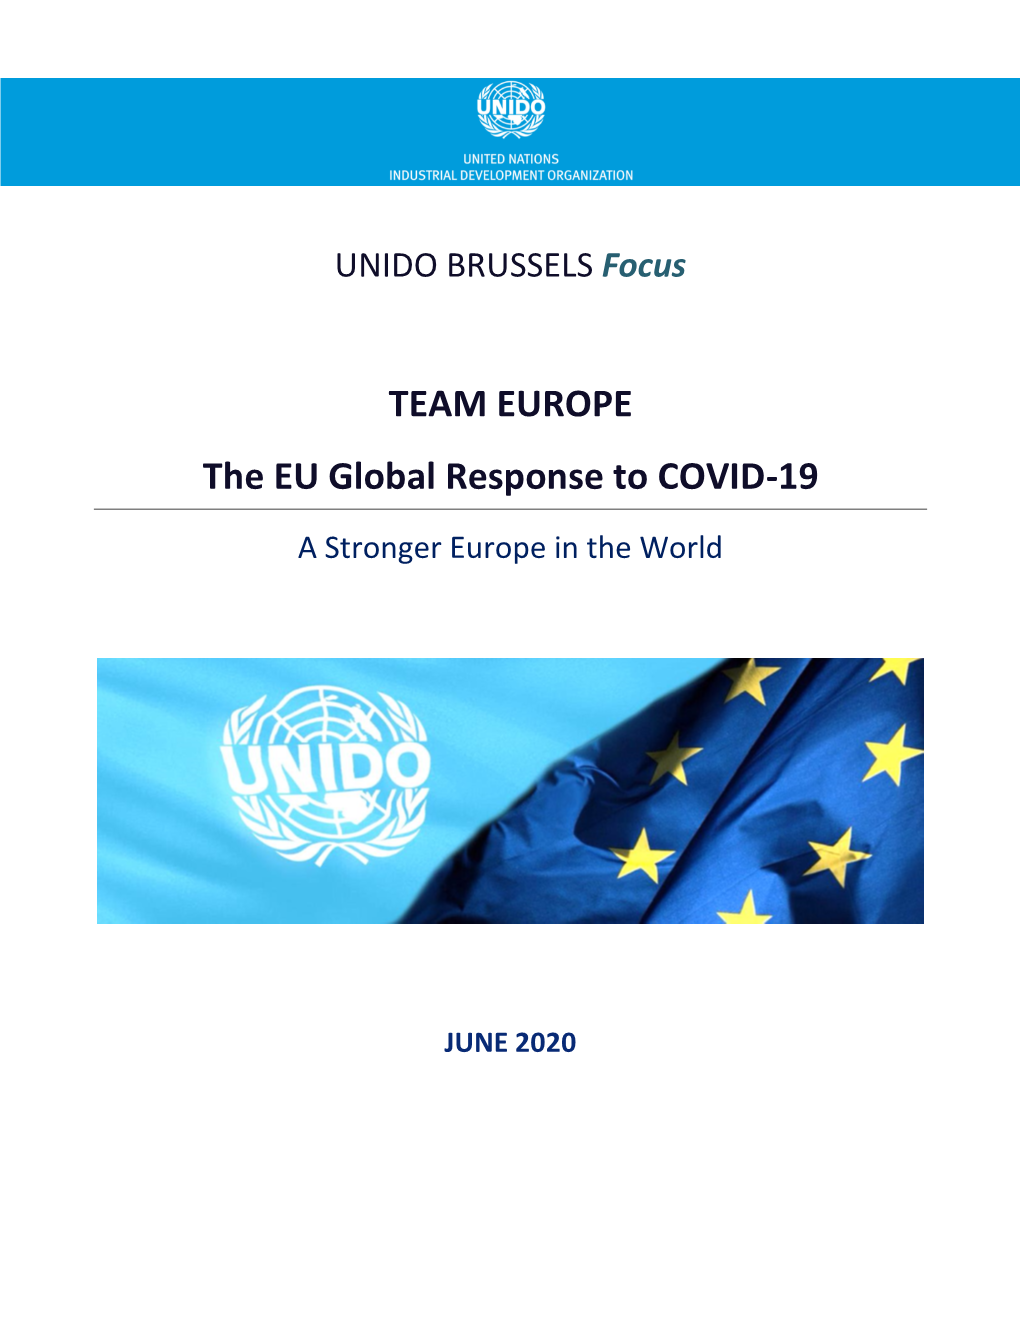 TEAM EUROPE the EU Global Response to COVID-19